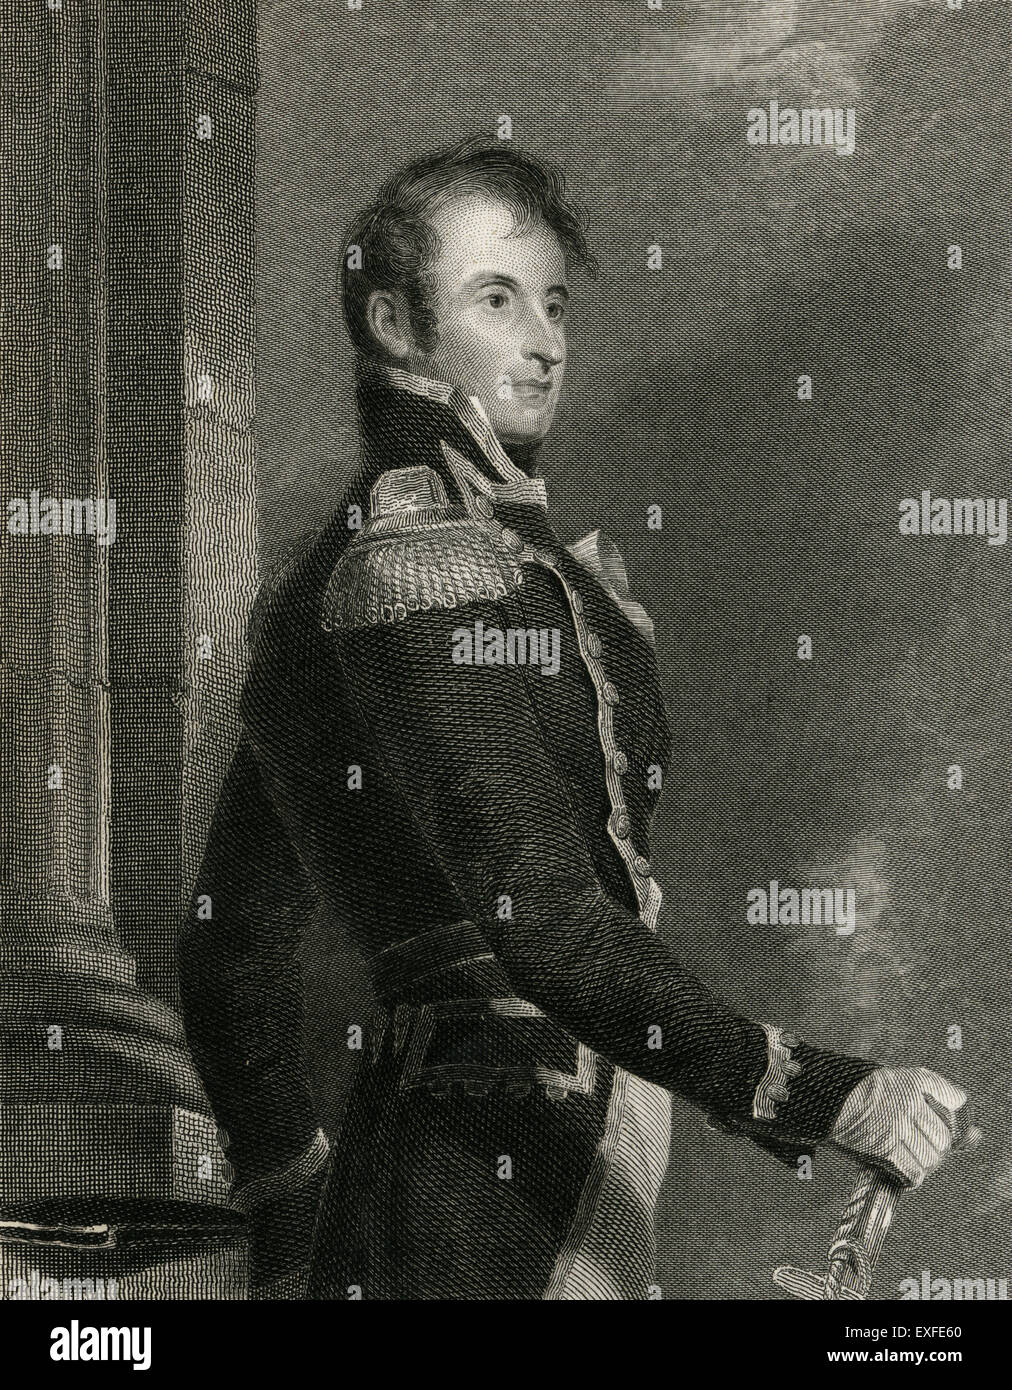 C Antique1860 gravure, Stephen Decatur. Stephen Decatur, Jr (1779-1820) était un officier de la marine des États-Unis et le Commodore remarquable pour ses nombreuses victoires navales au début du 19e siècle. Banque D'Images